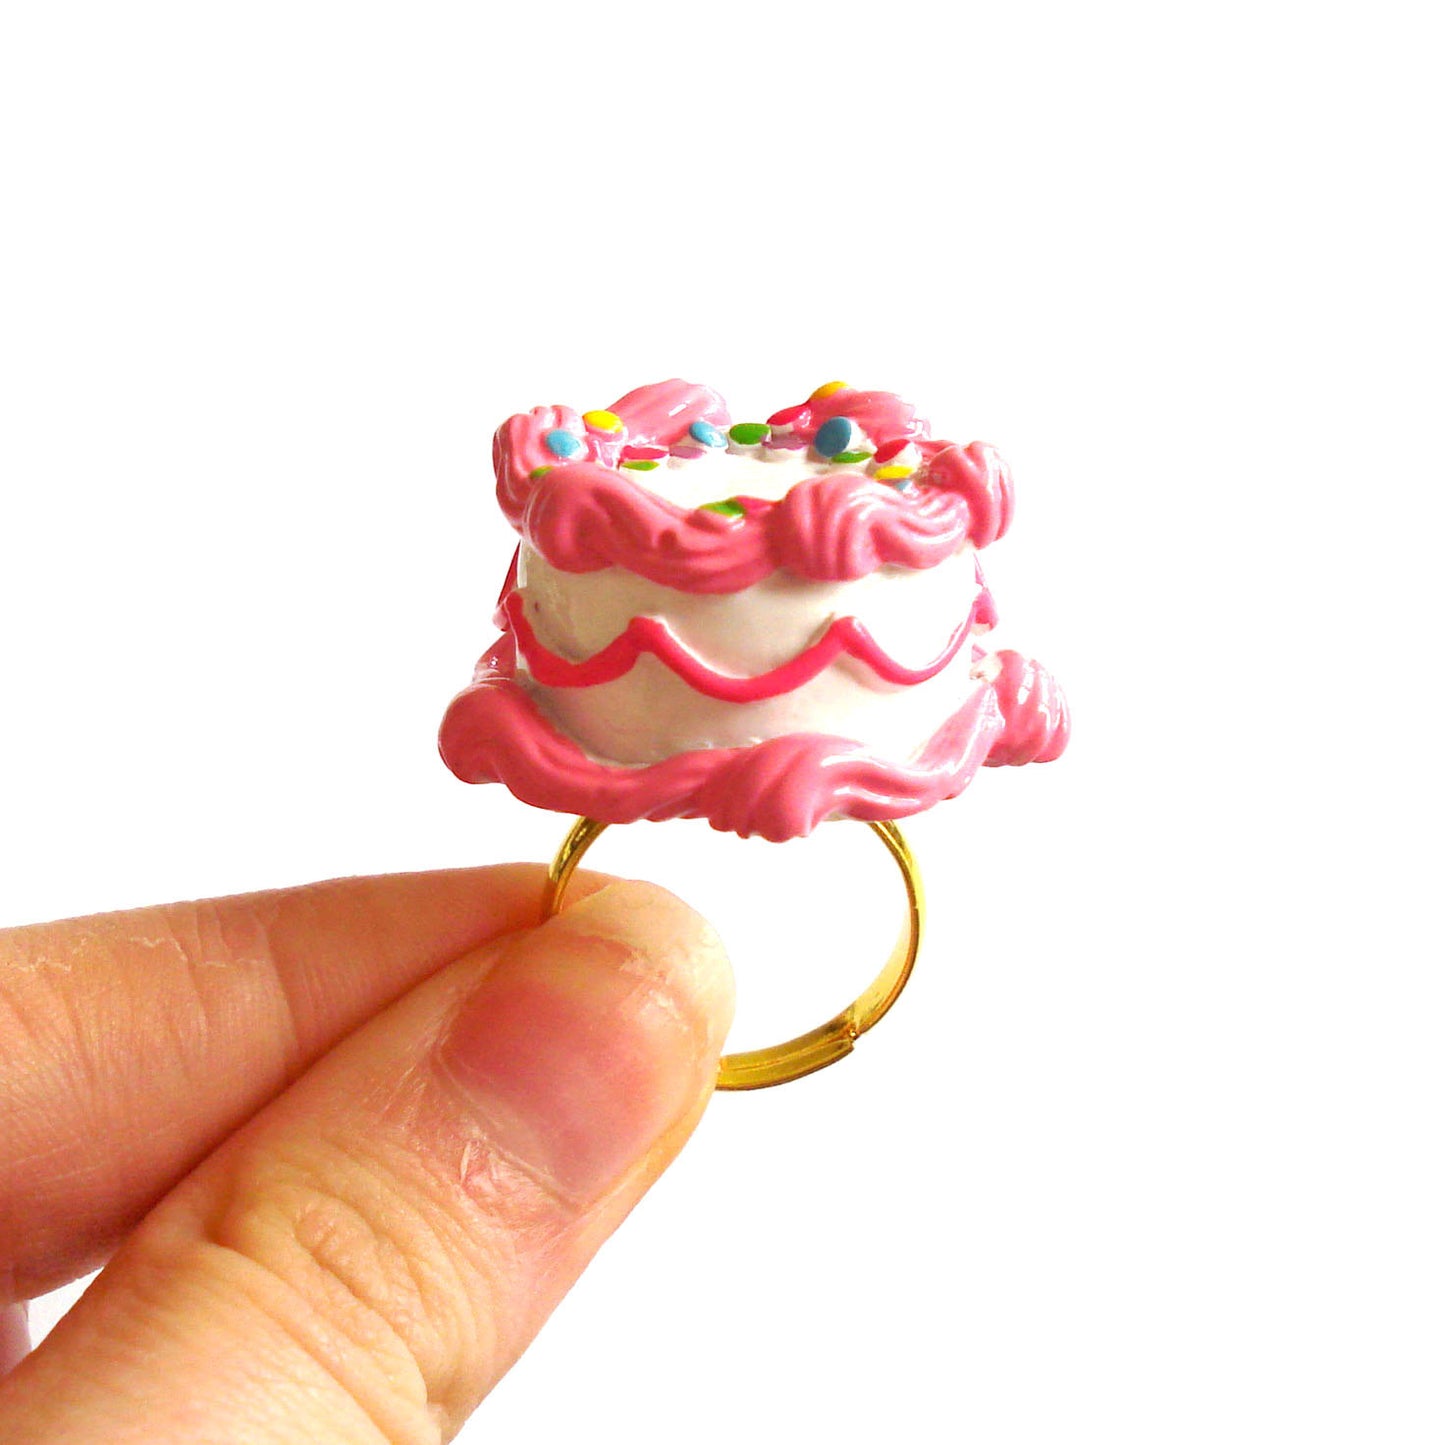 Pink Birthday Cake Ring